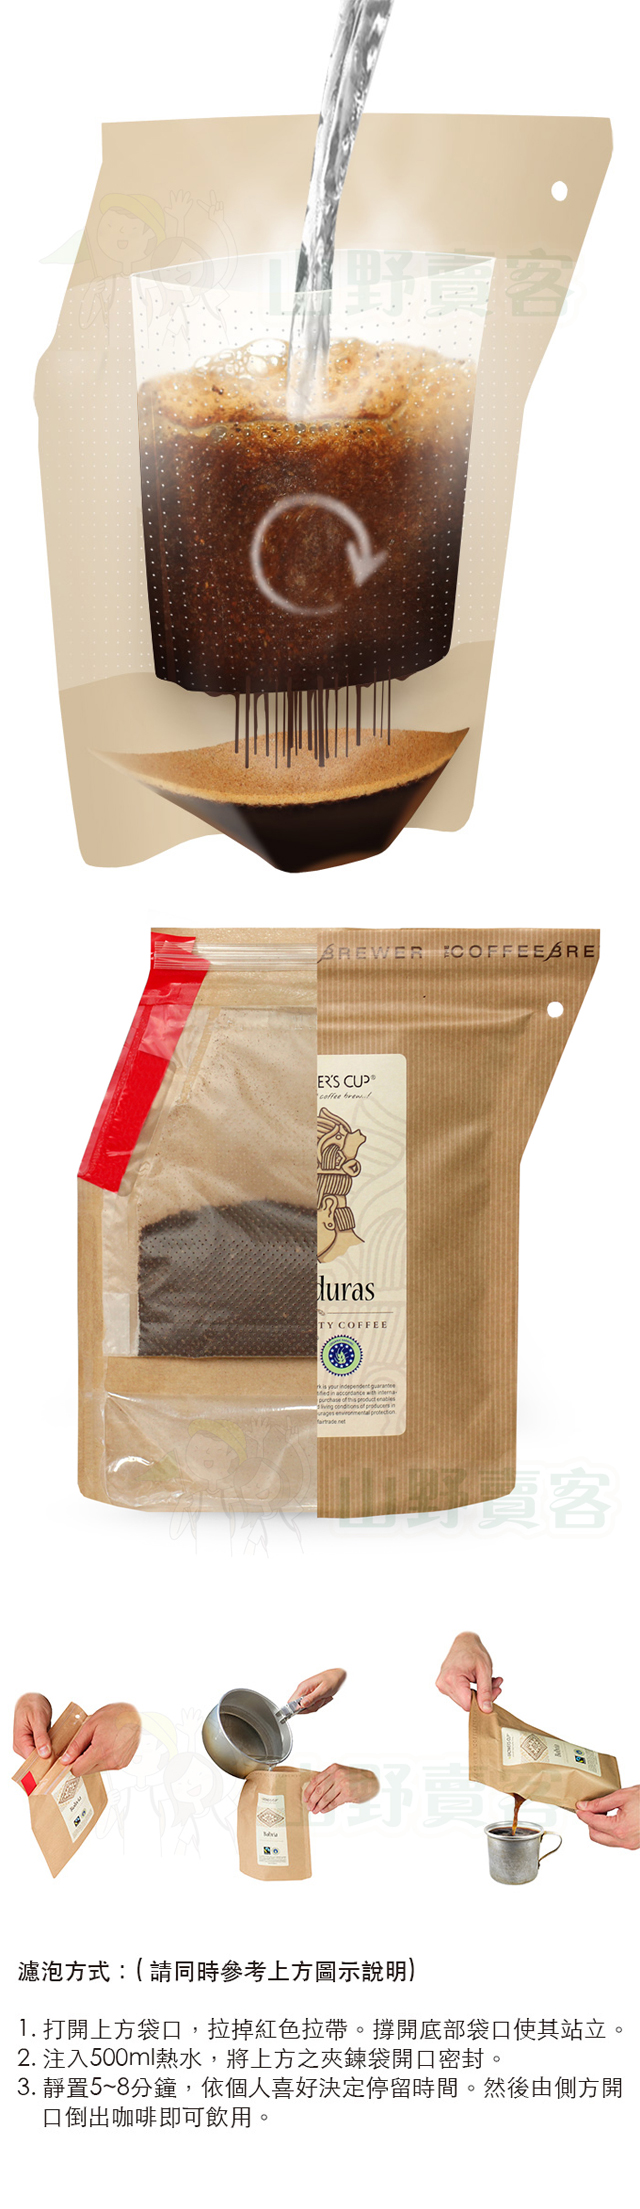 丹麥 Grower’s Cup 頂級有機攜帶式濾泡咖啡-衣索匹亞(Ethiopia) 研磨咖啡粉 GR02